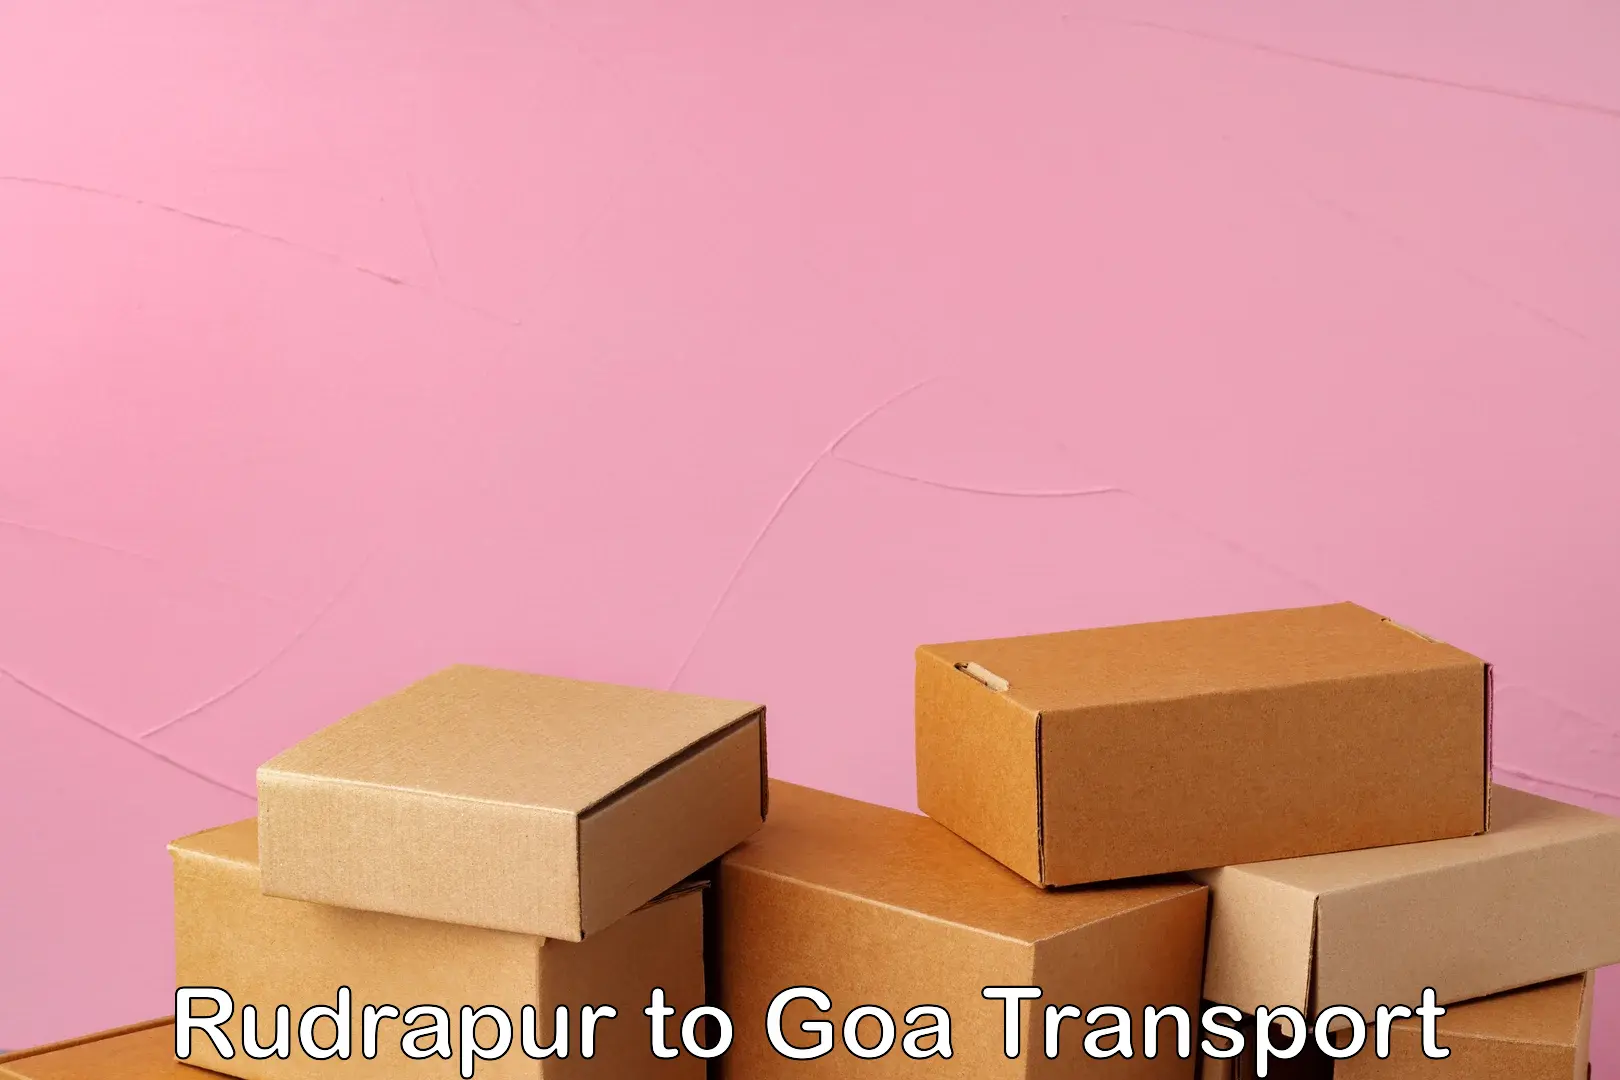 Container transport service Rudrapur to Vasco da Gama